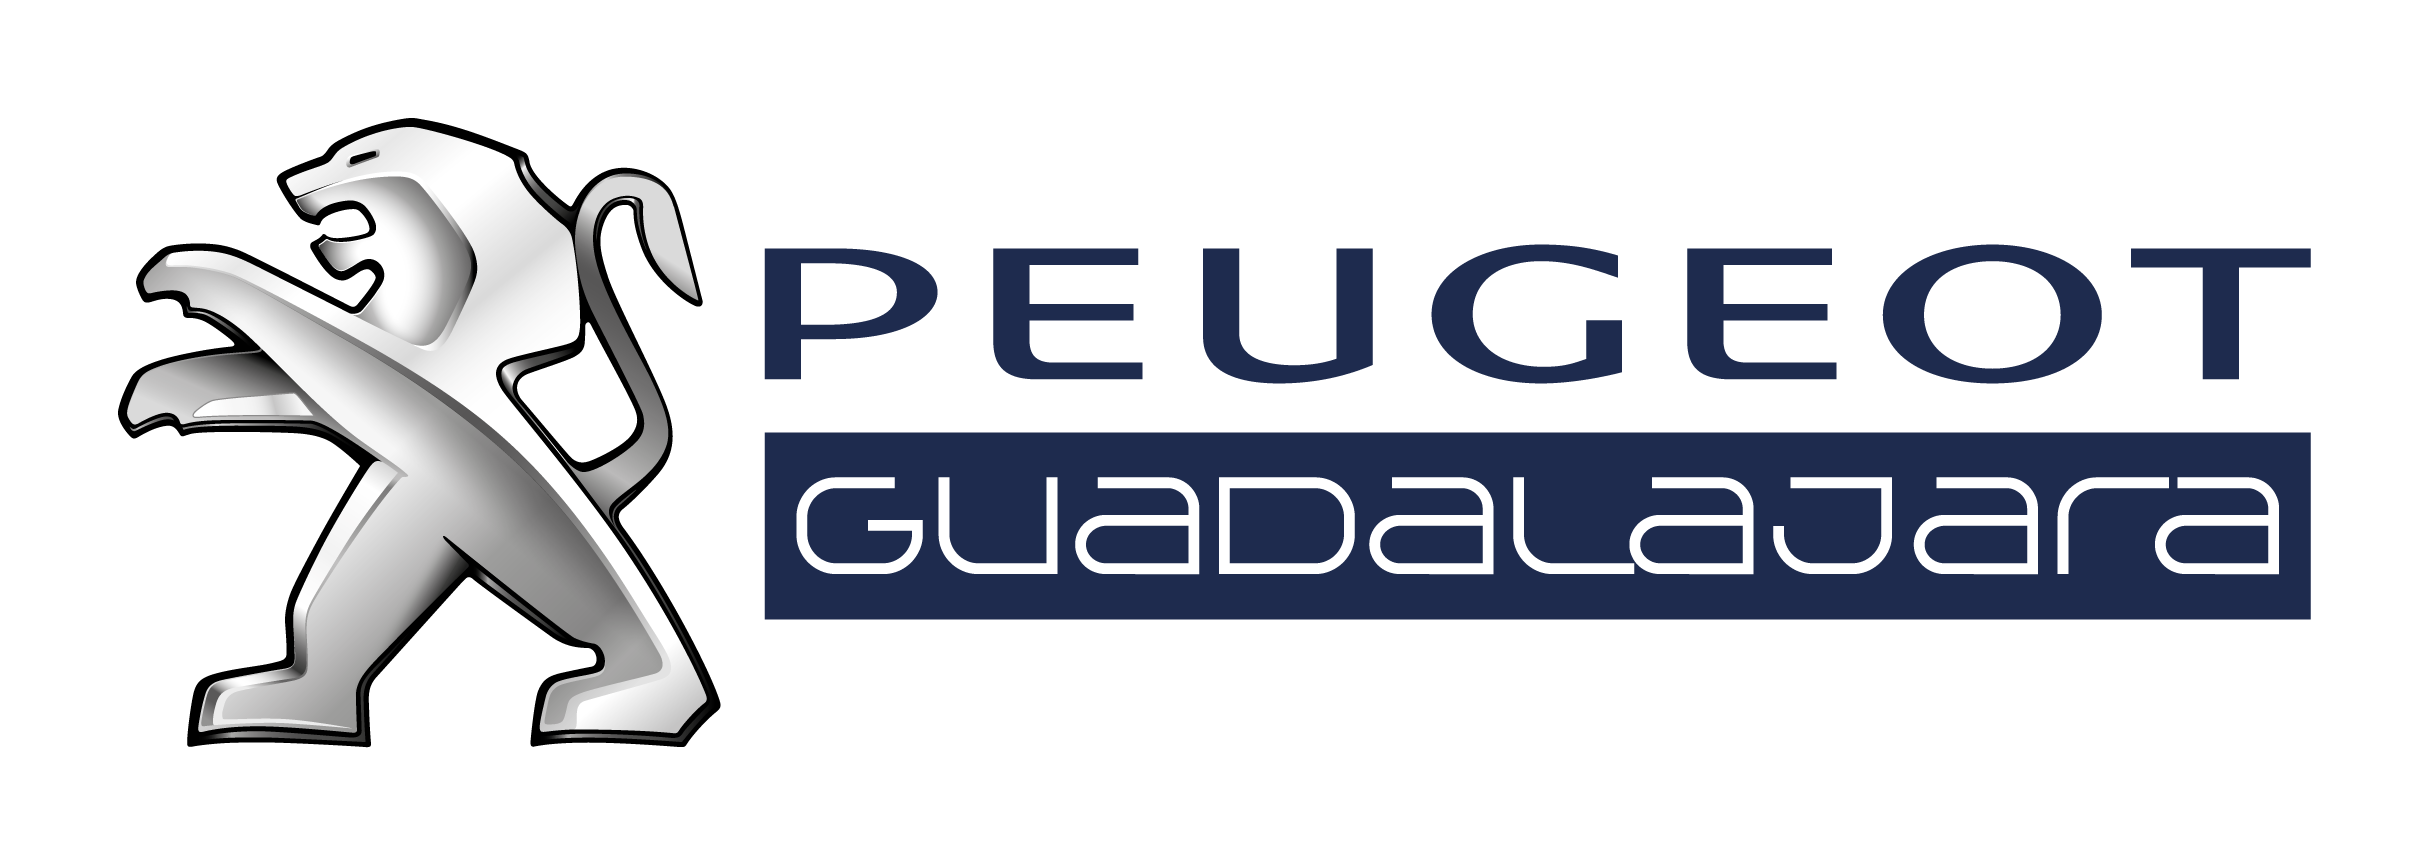 Peugeot Guadalajara Logo